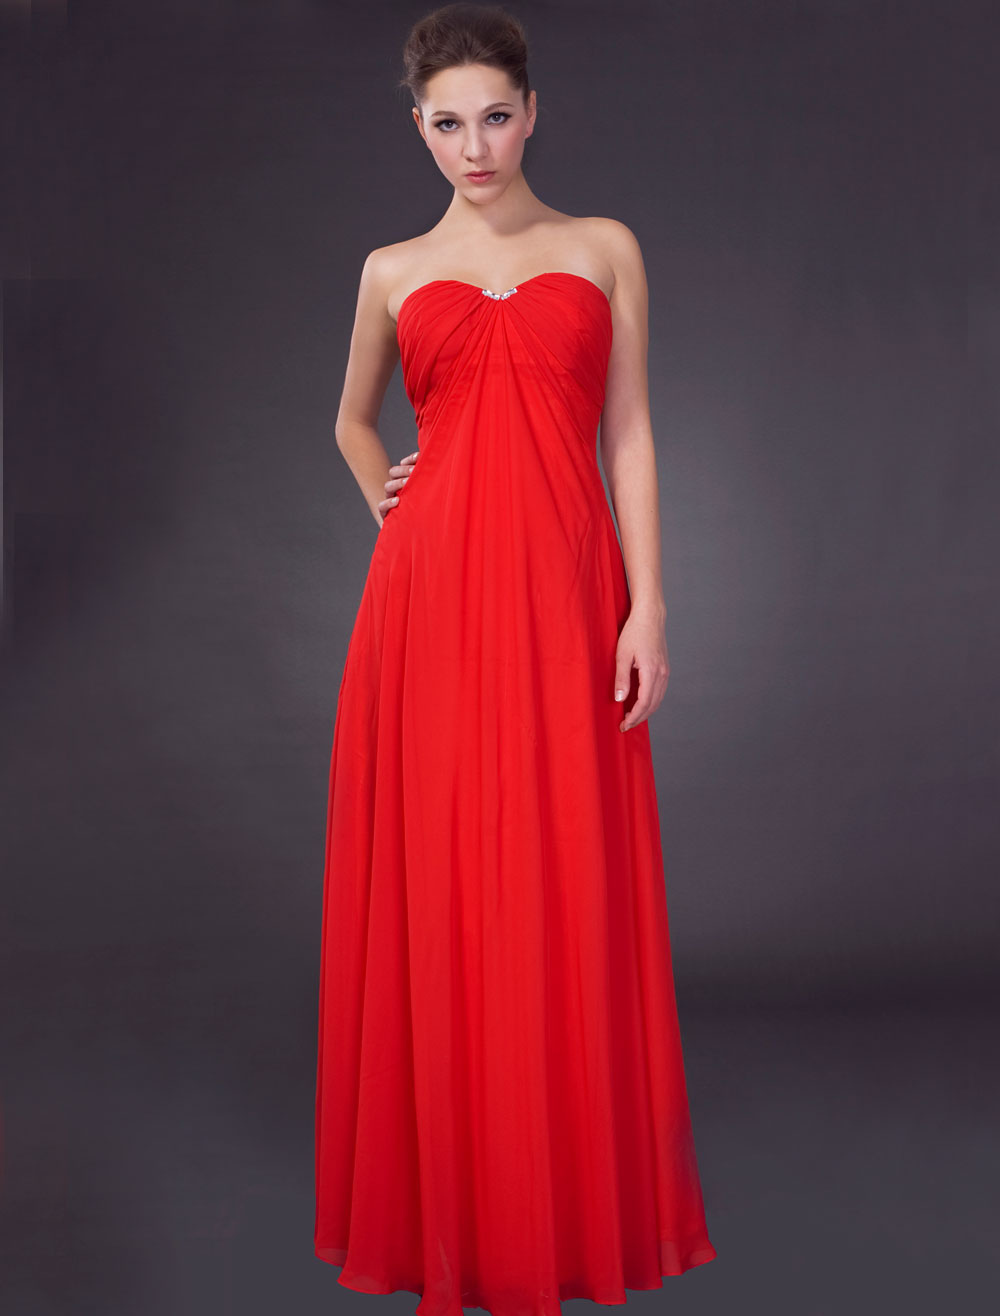 empire waist red dress